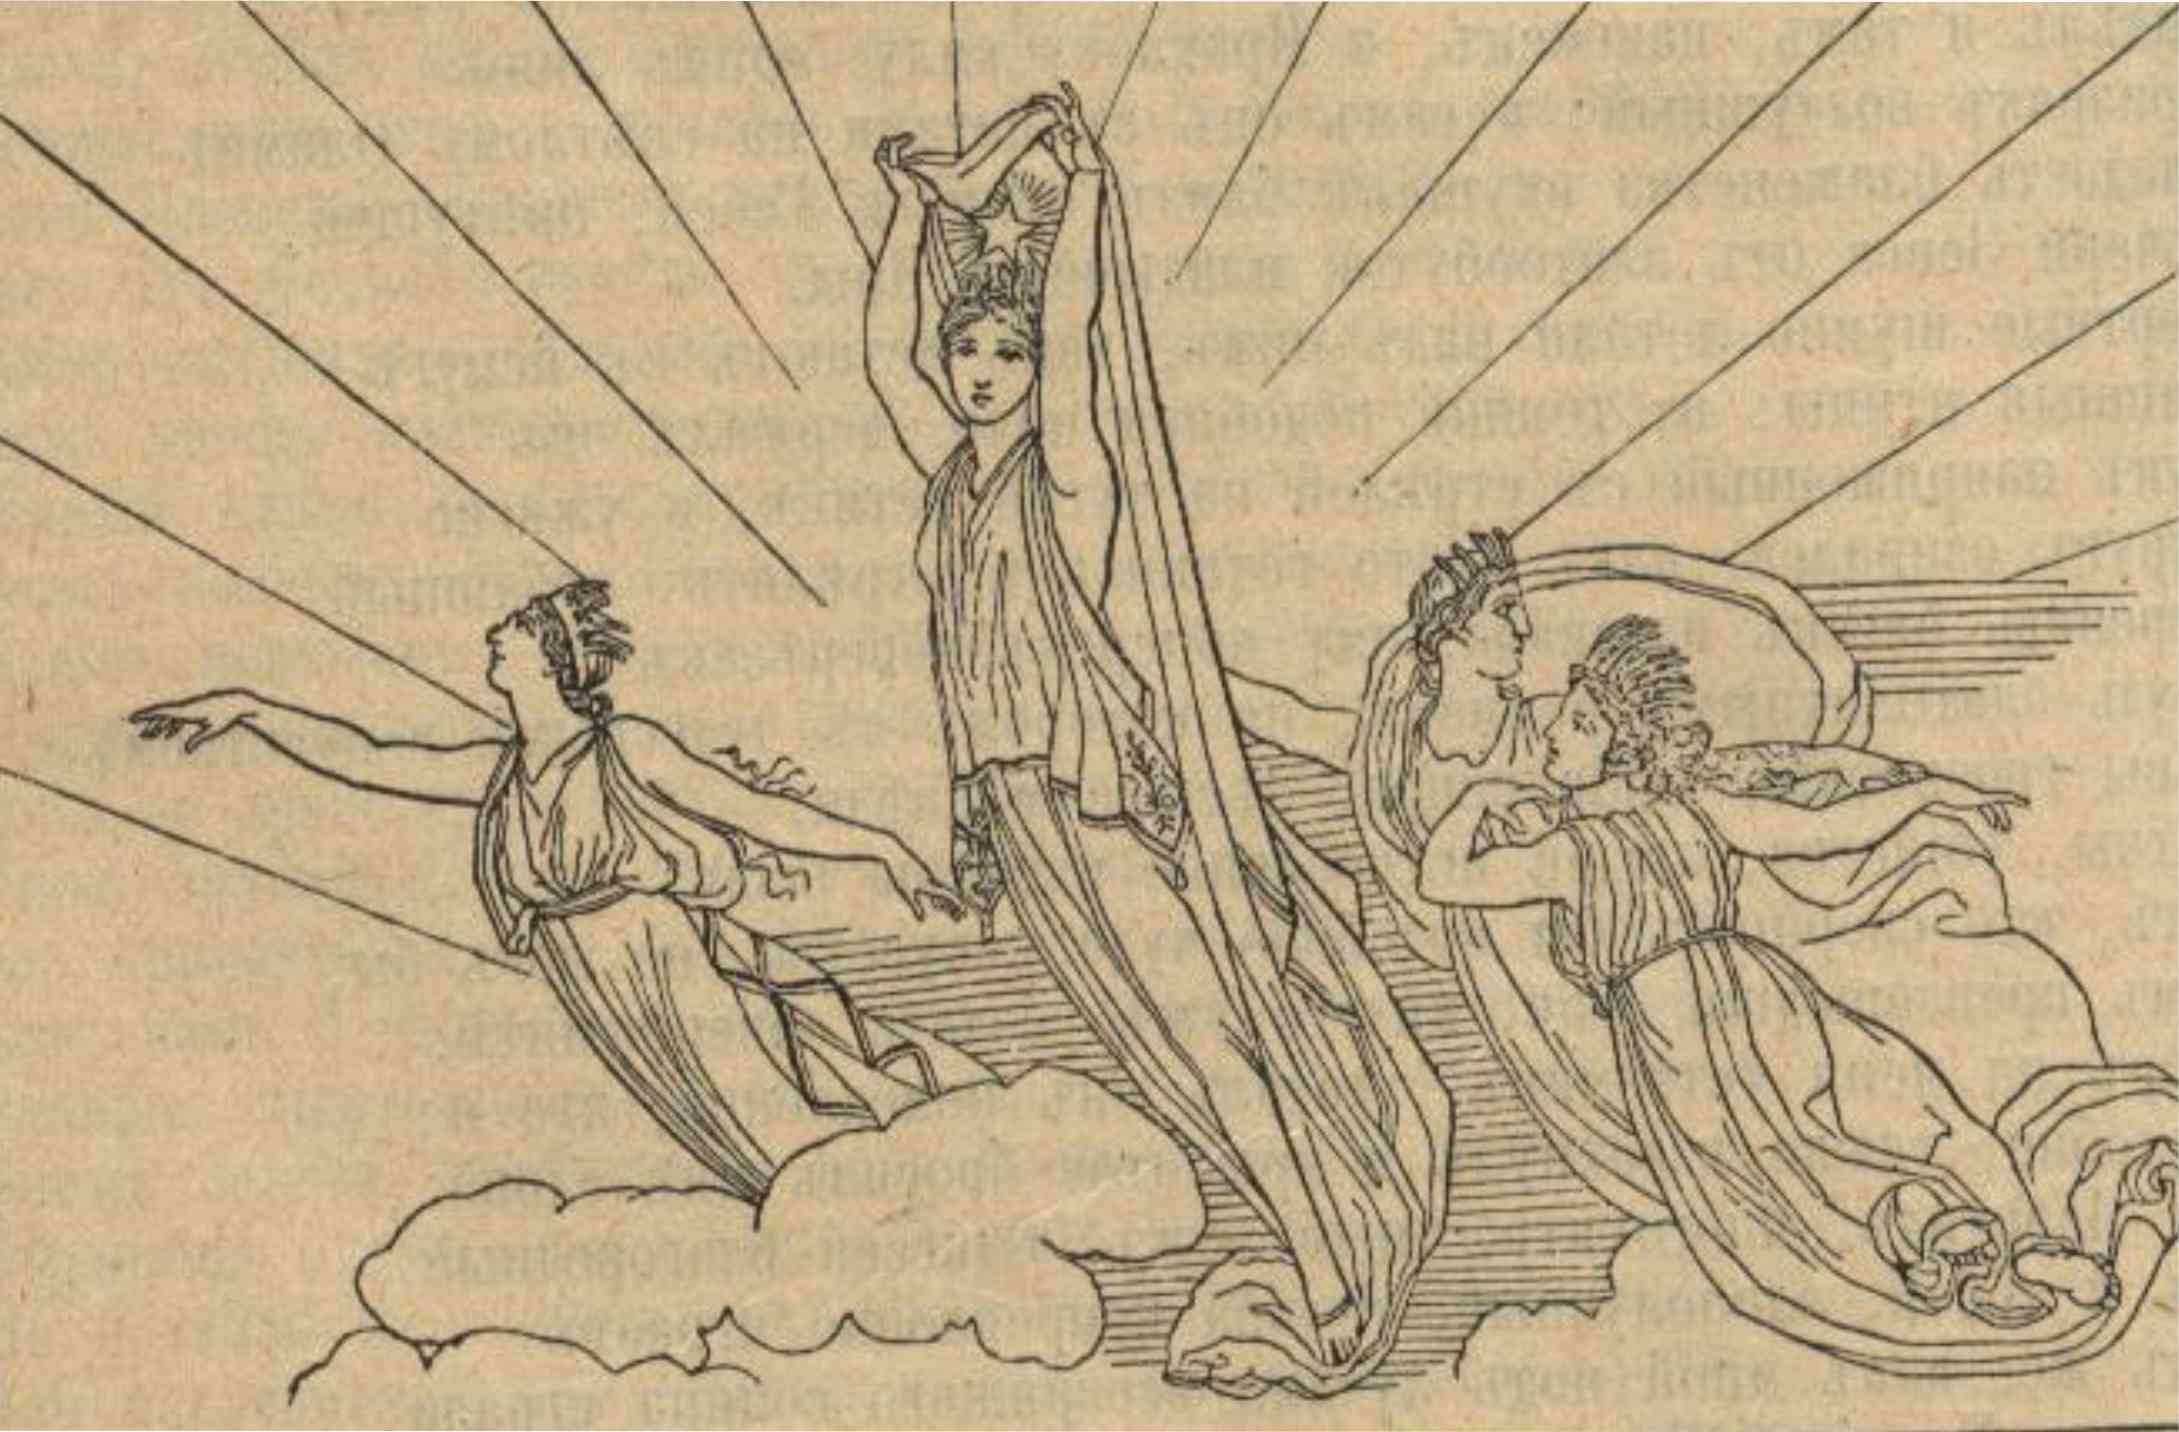 Сюжет поэмы гомера. Джон Флаксман иллюстрации к Одиссея. Джон Флаксман иллюстрации к поэме Гомера Одиссея. Иллюстрация к поэме Илиада и Одиссея. Джон Флаксман 1755 1826 Илиада.